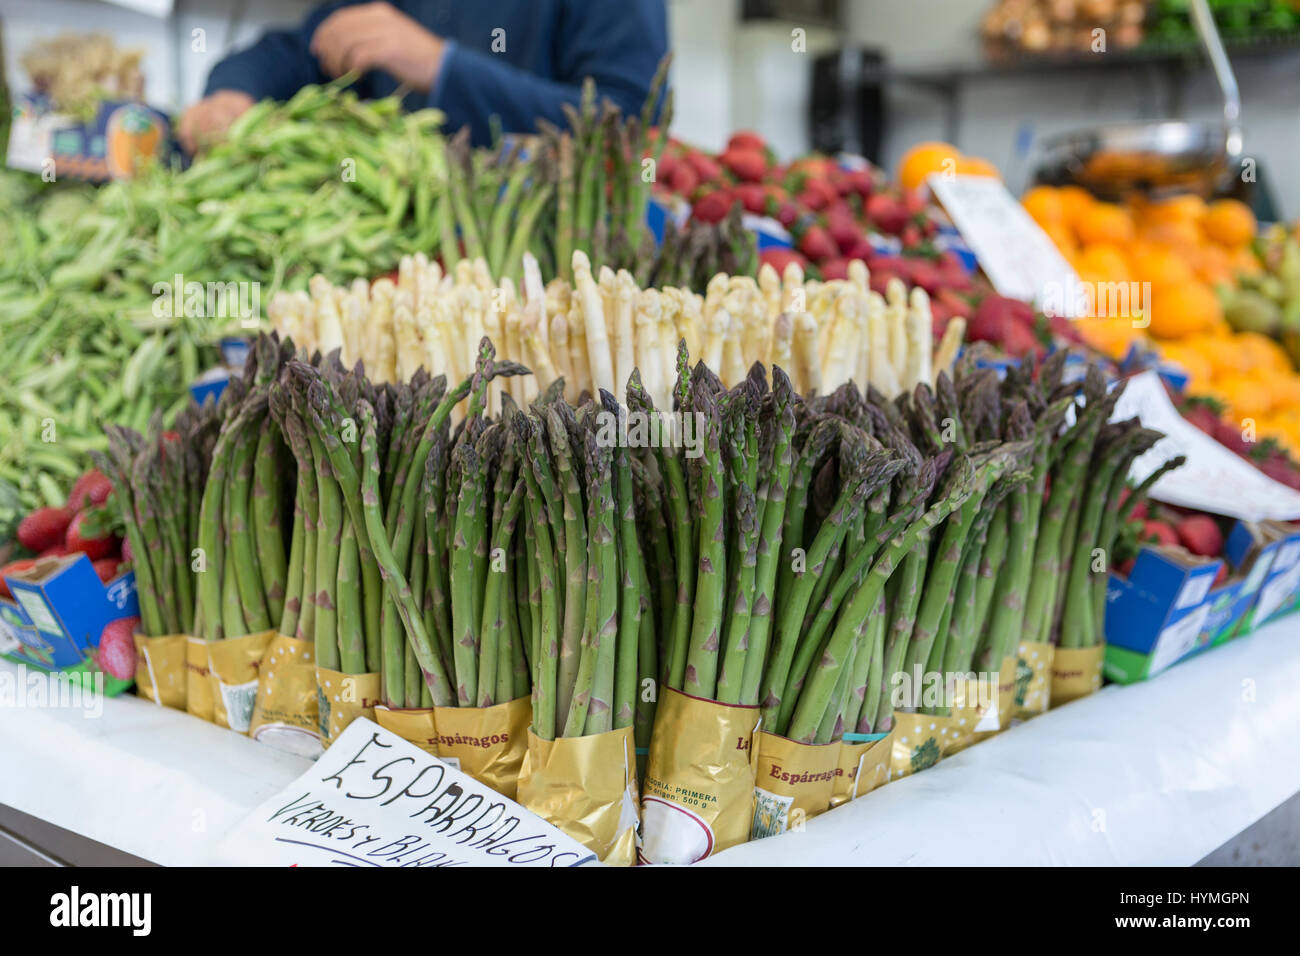 Décrochage du marché alimentaire des agriculteurs avec variété de légumes biologiques, Cadix, Espagne Banque D'Images